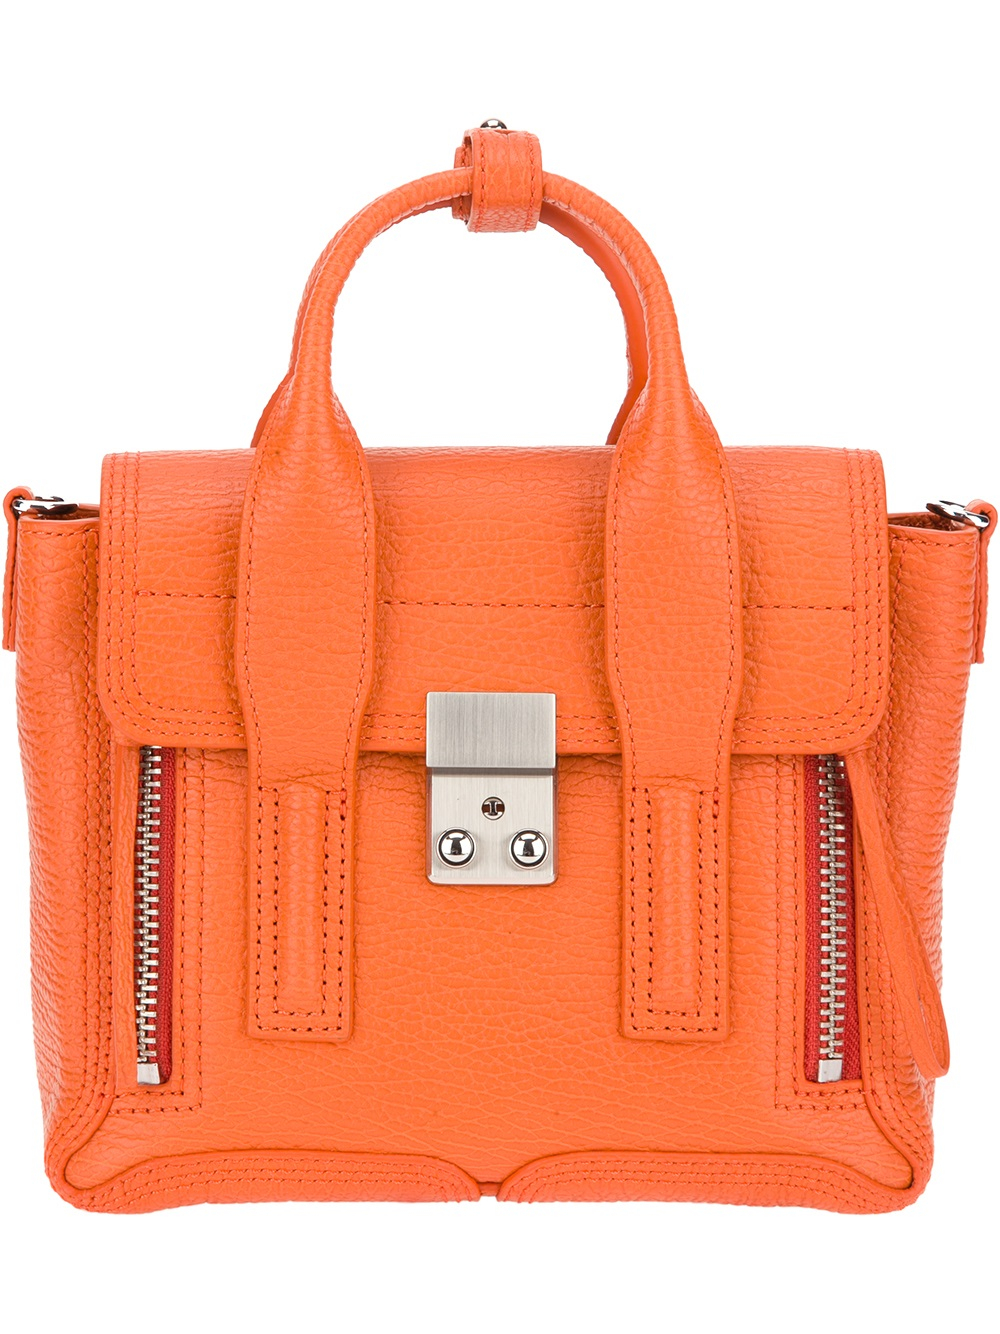 Lyst - 3.1 phillip lim Mini Pashli Satchel Bag in Orange